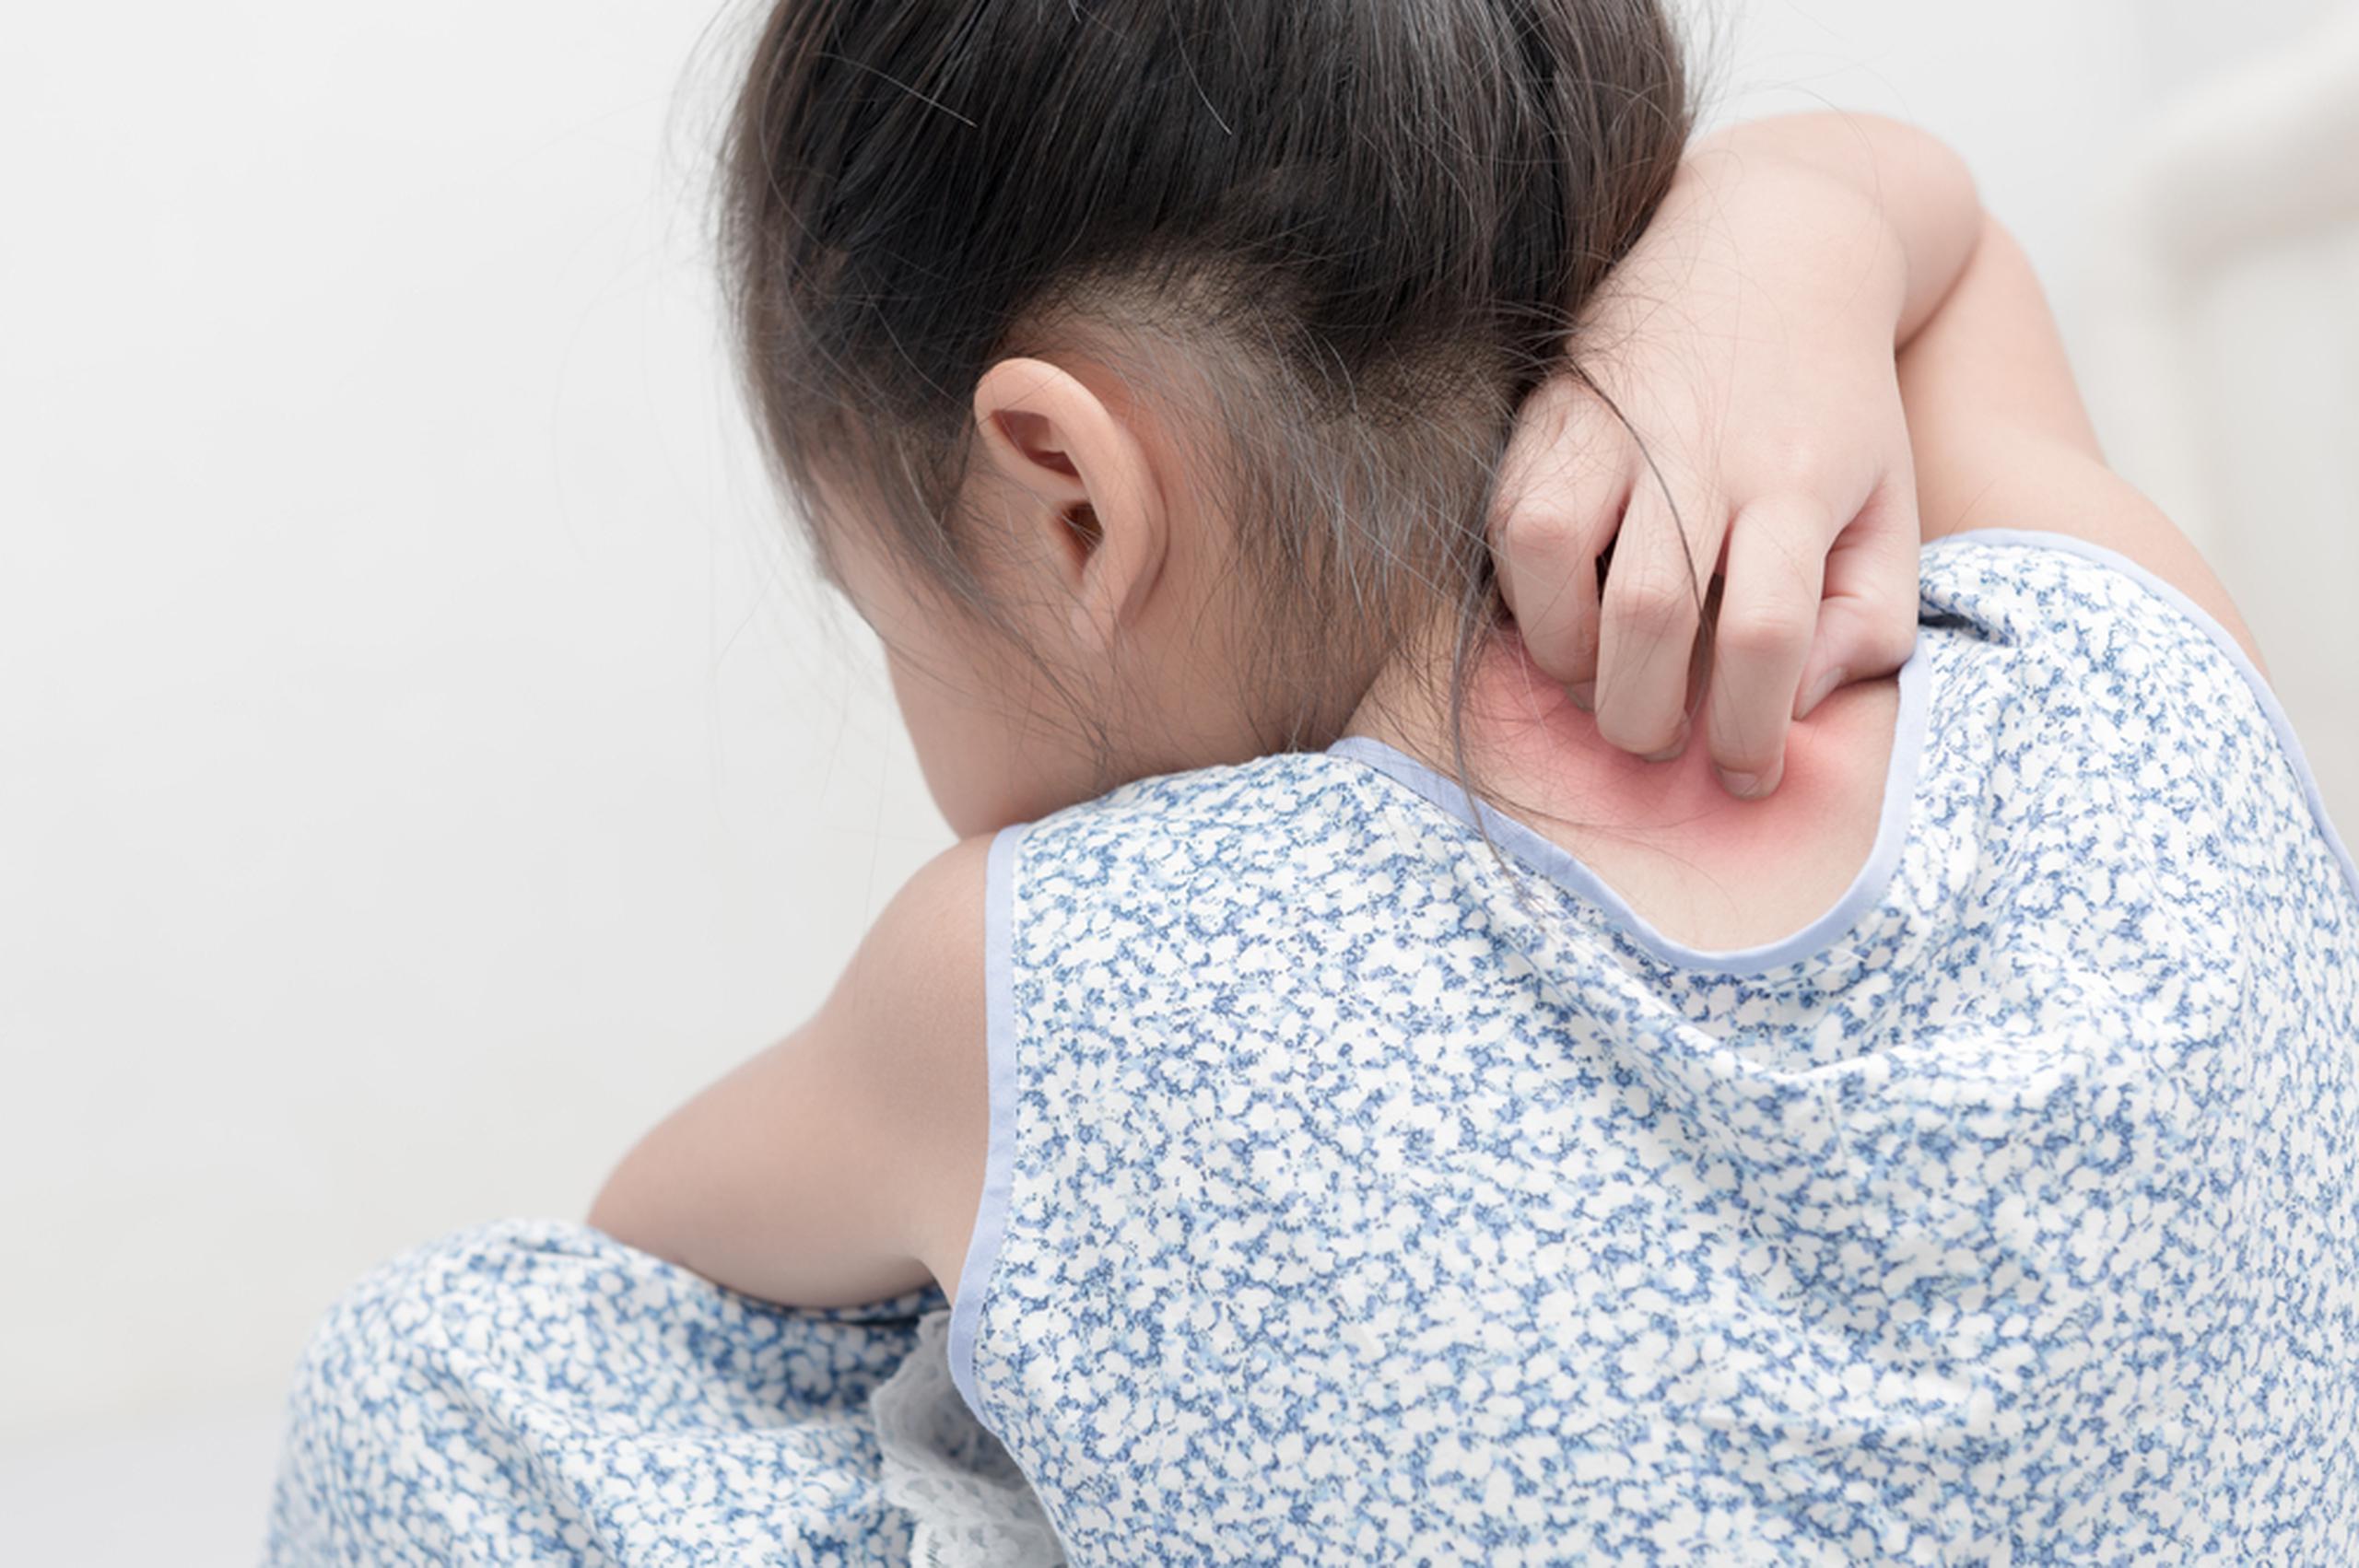 El tipo de psoriasis más común en los niños es la psoriasis vulgar.